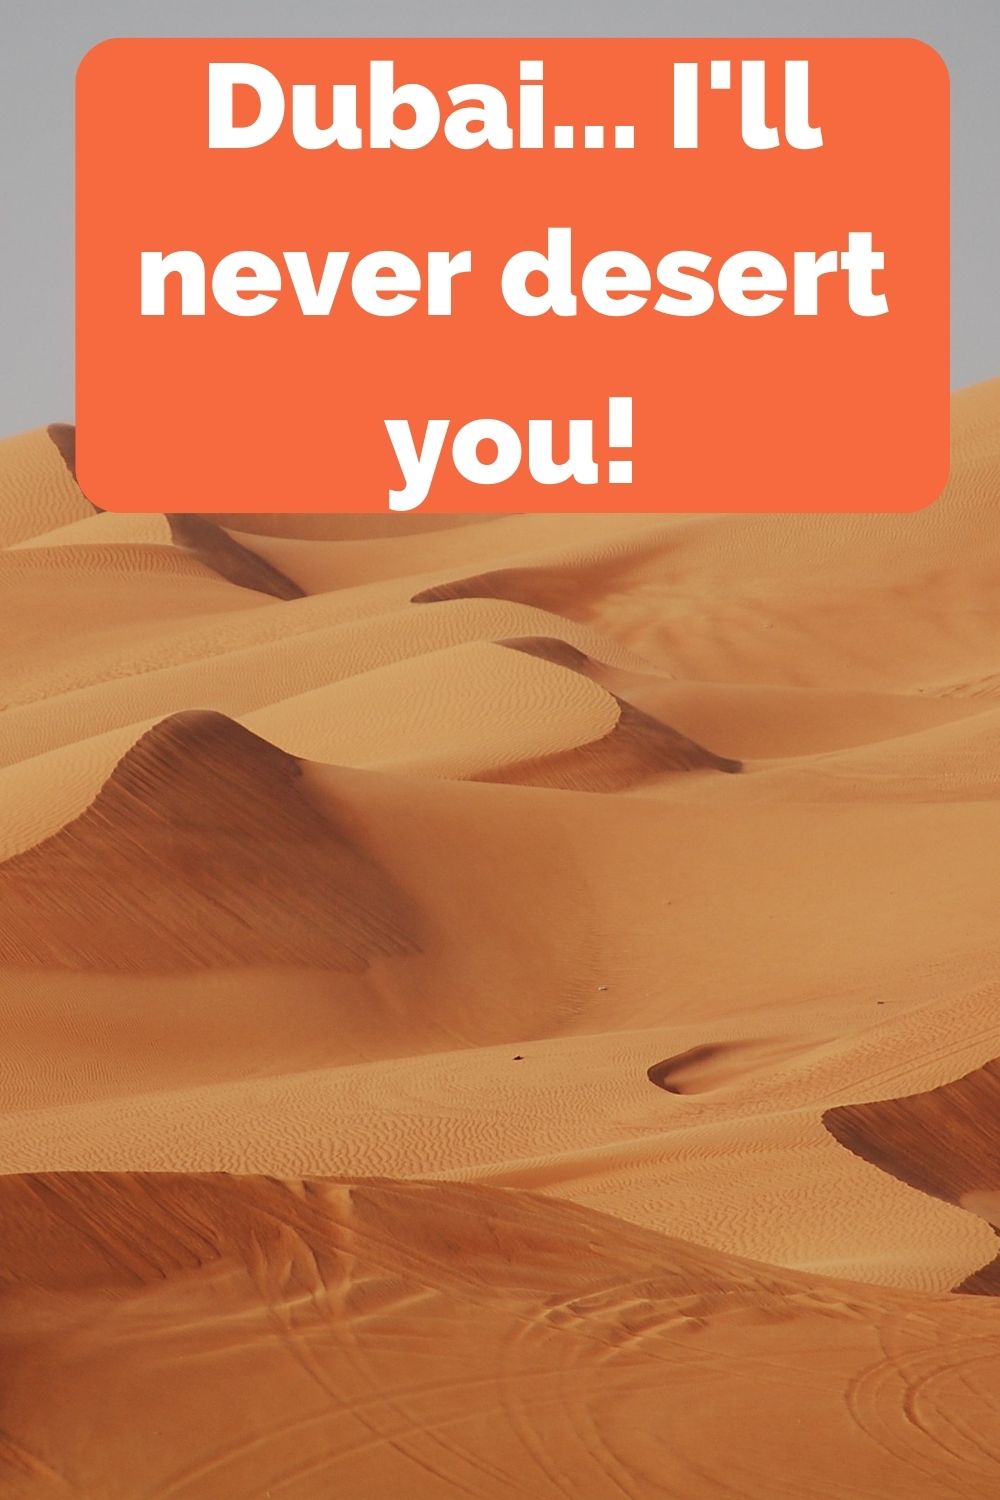 Dubai, I'll never desert you